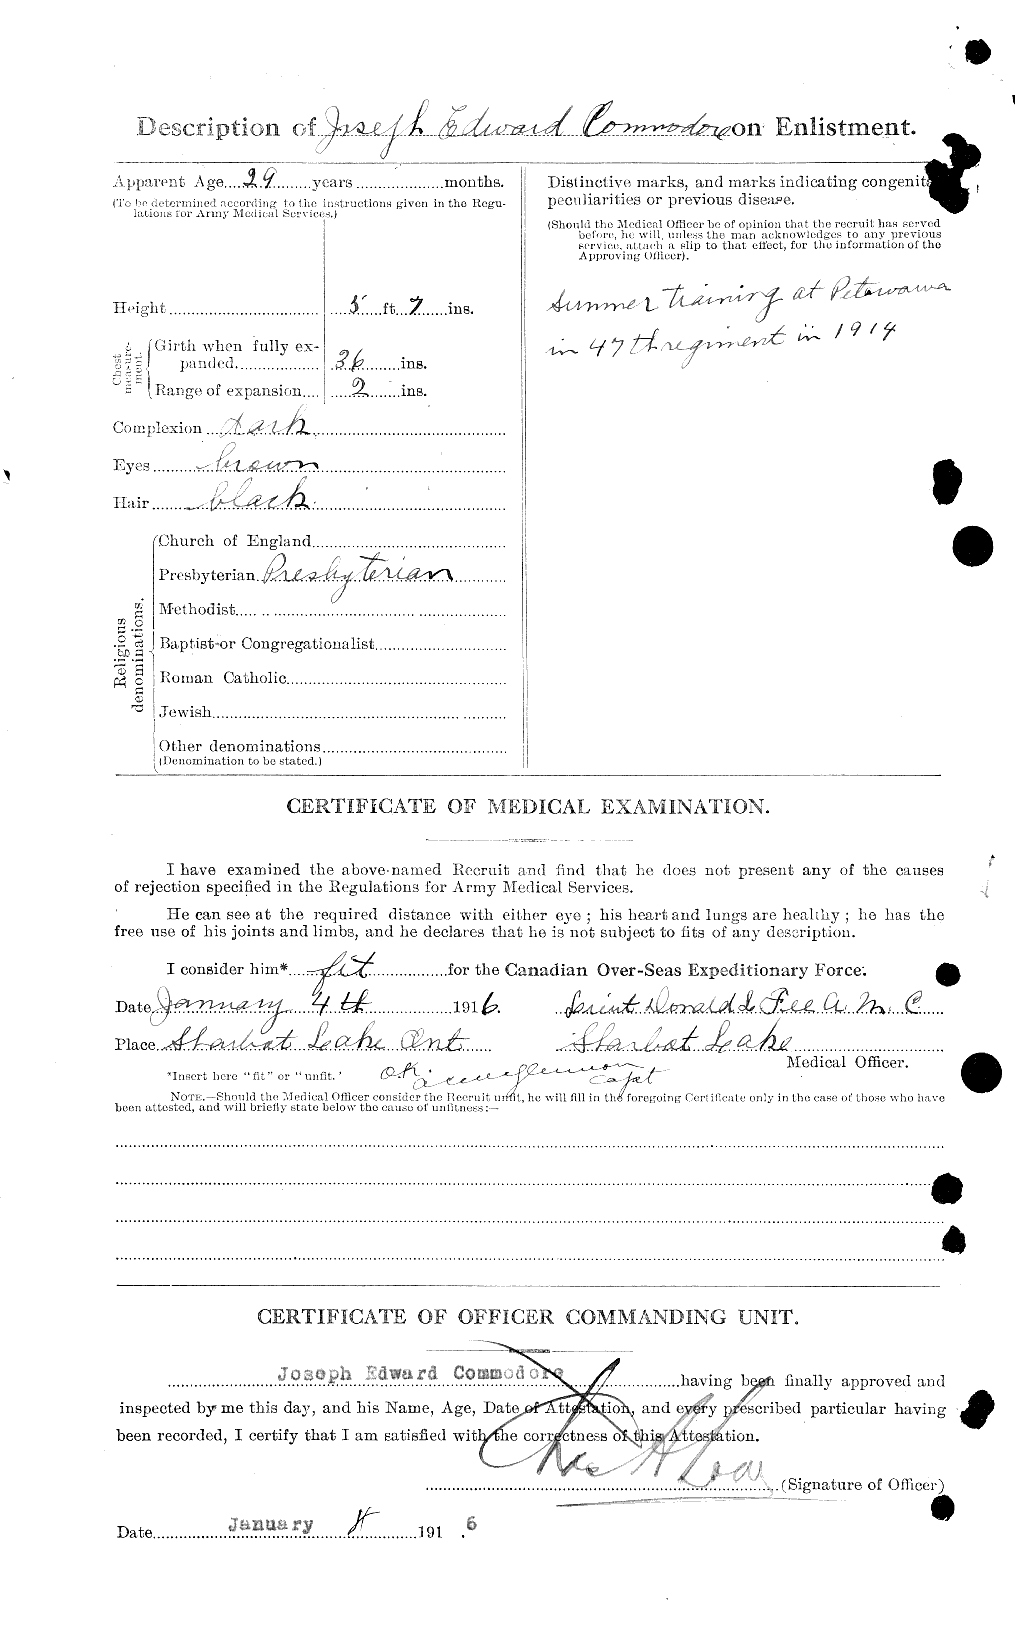 Dossiers du Personnel de la Première Guerre mondiale - CEC 042590b